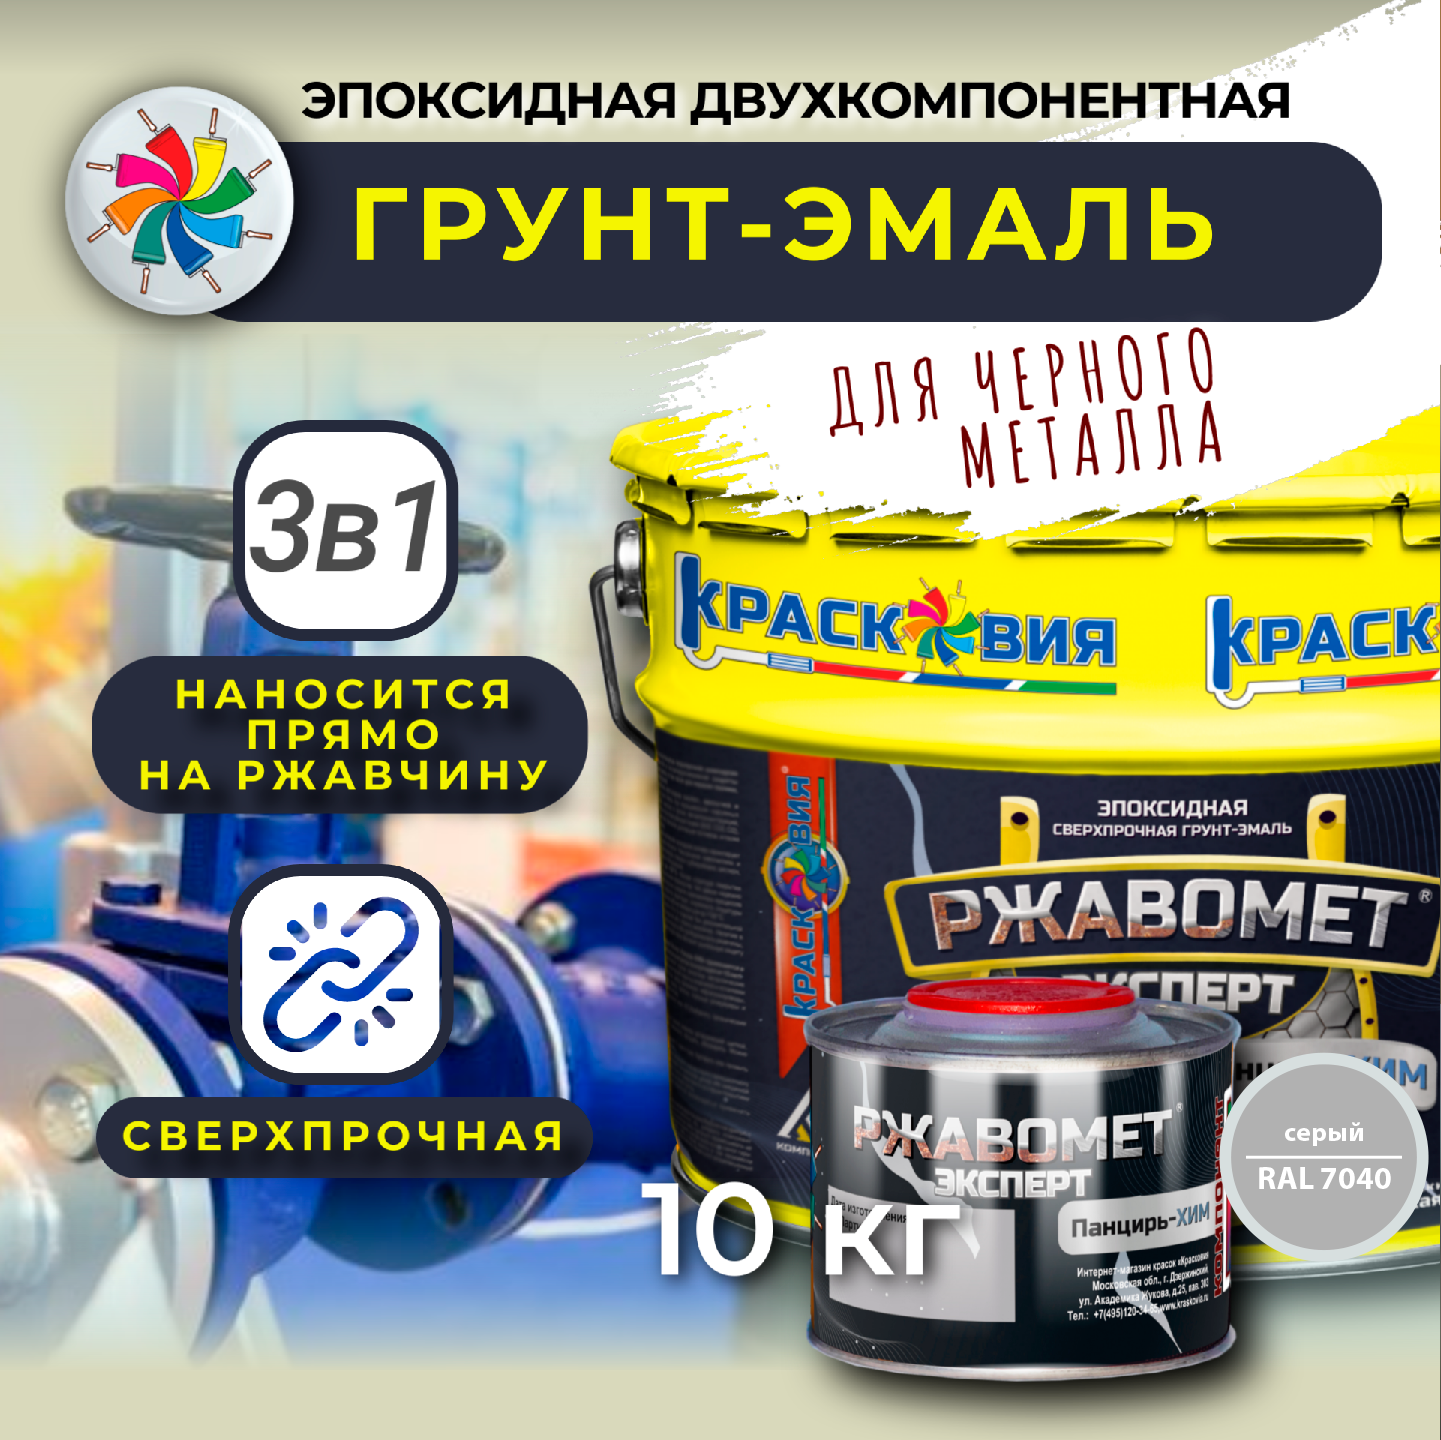 Эпоксидная грунт-эмаль, Ржавомет Эксперт Панцирь-ХИМ, RAL 7040, 10 кг.